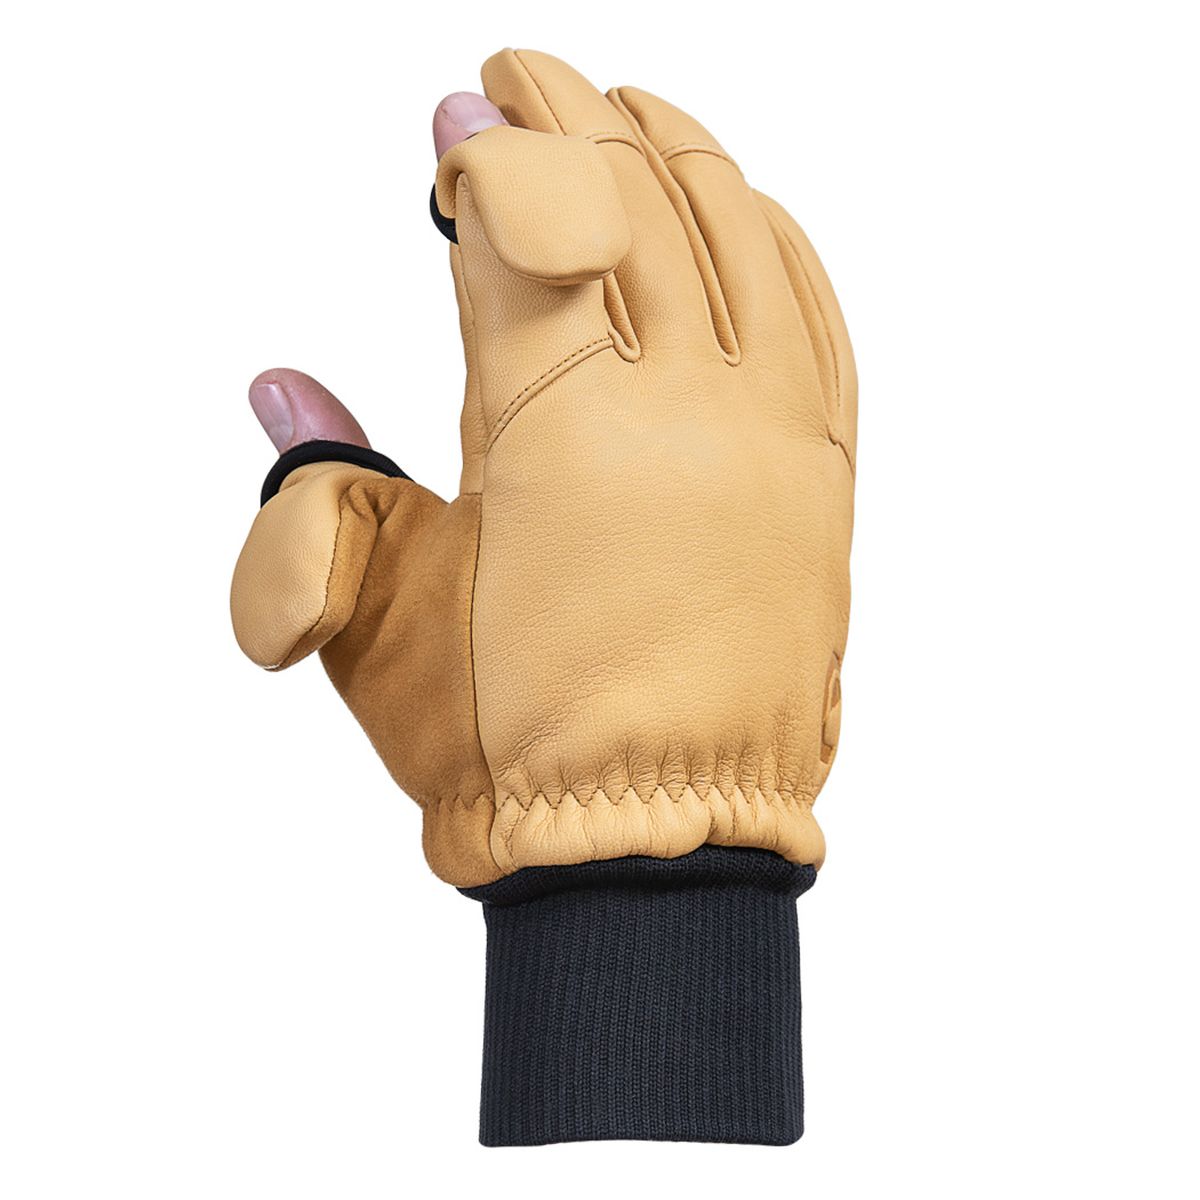 Vallerret Hatchet Leather Glove Natural, Leder-Fotohandschuhe L - Hellbraun